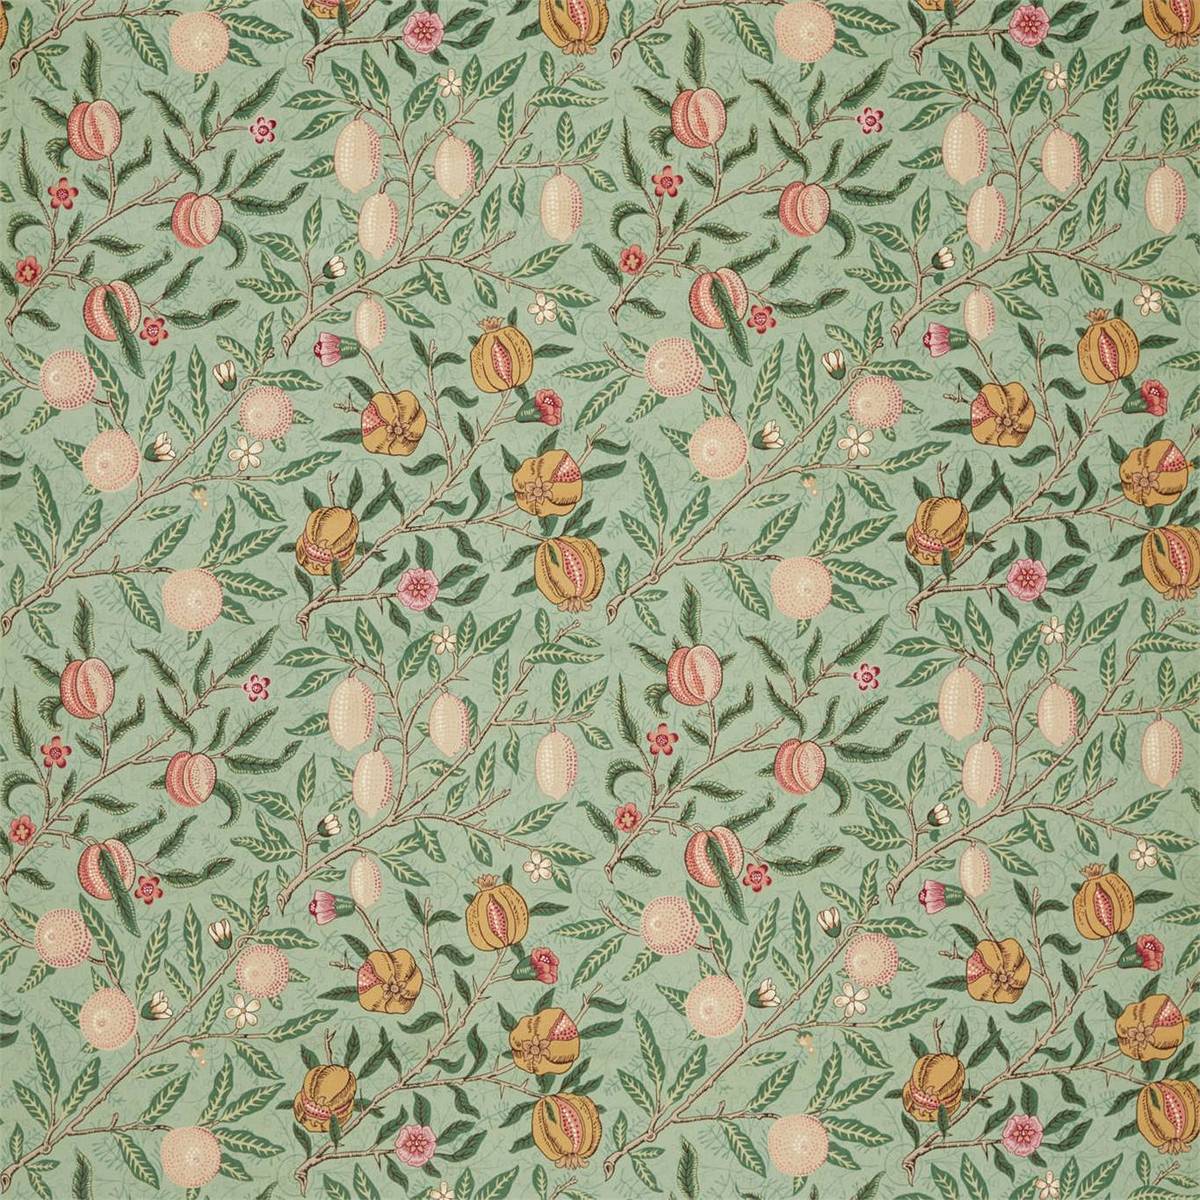 Fruit Velvet Privet/Thyme Fabric by William Morris & Co.